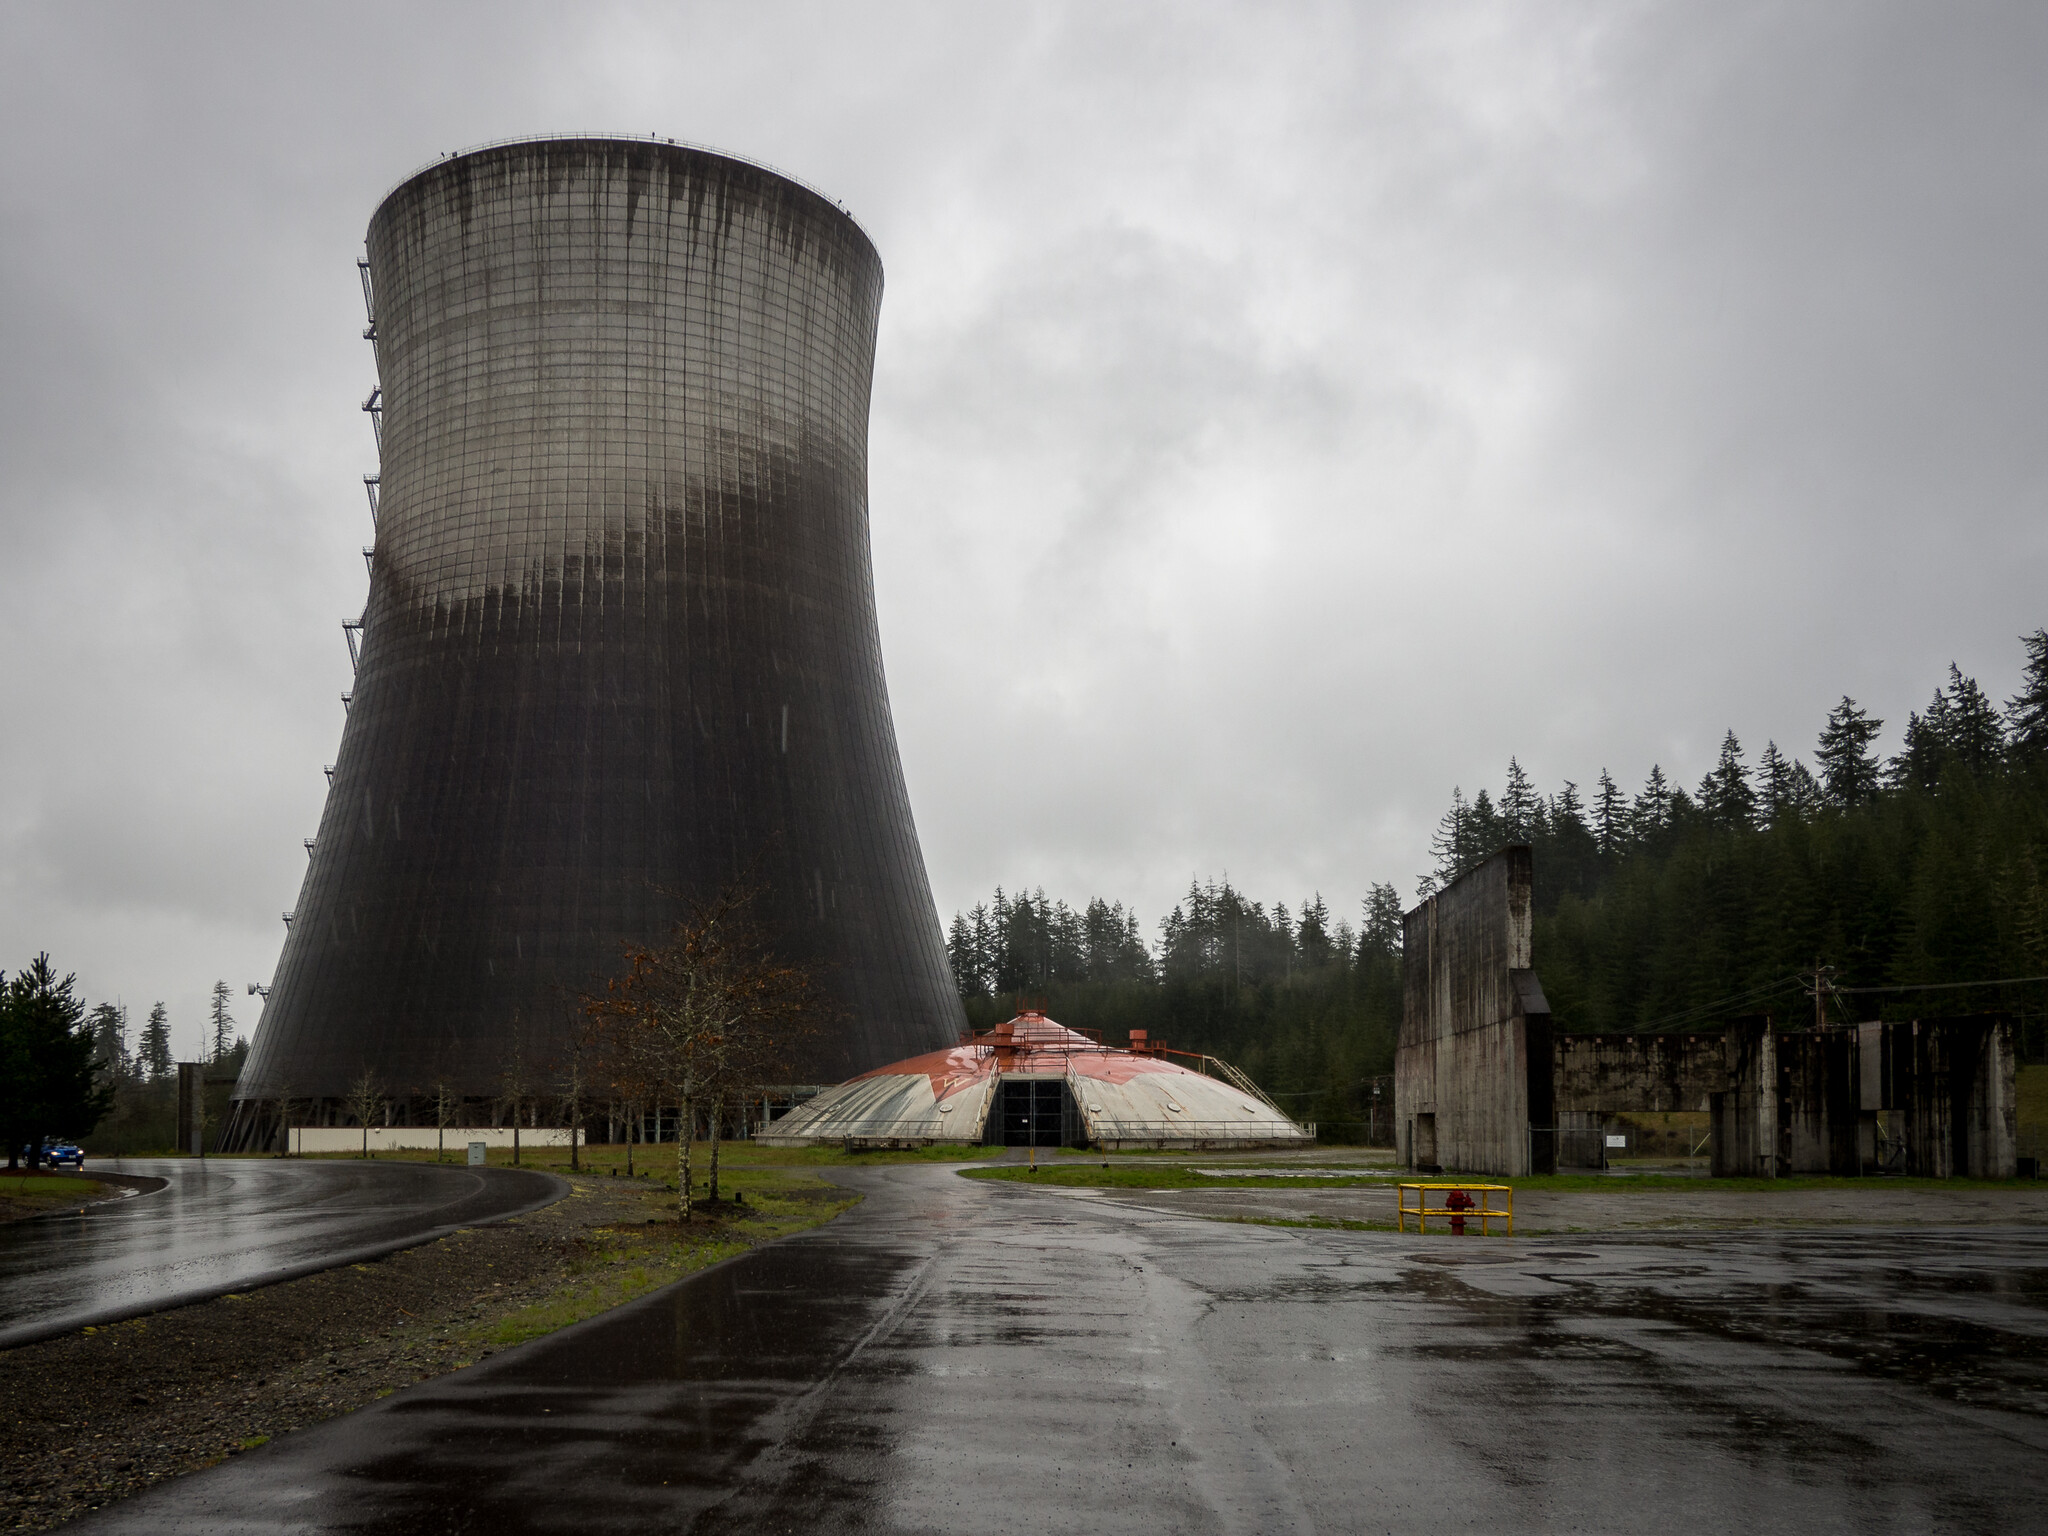 satsop nuclear plant tours